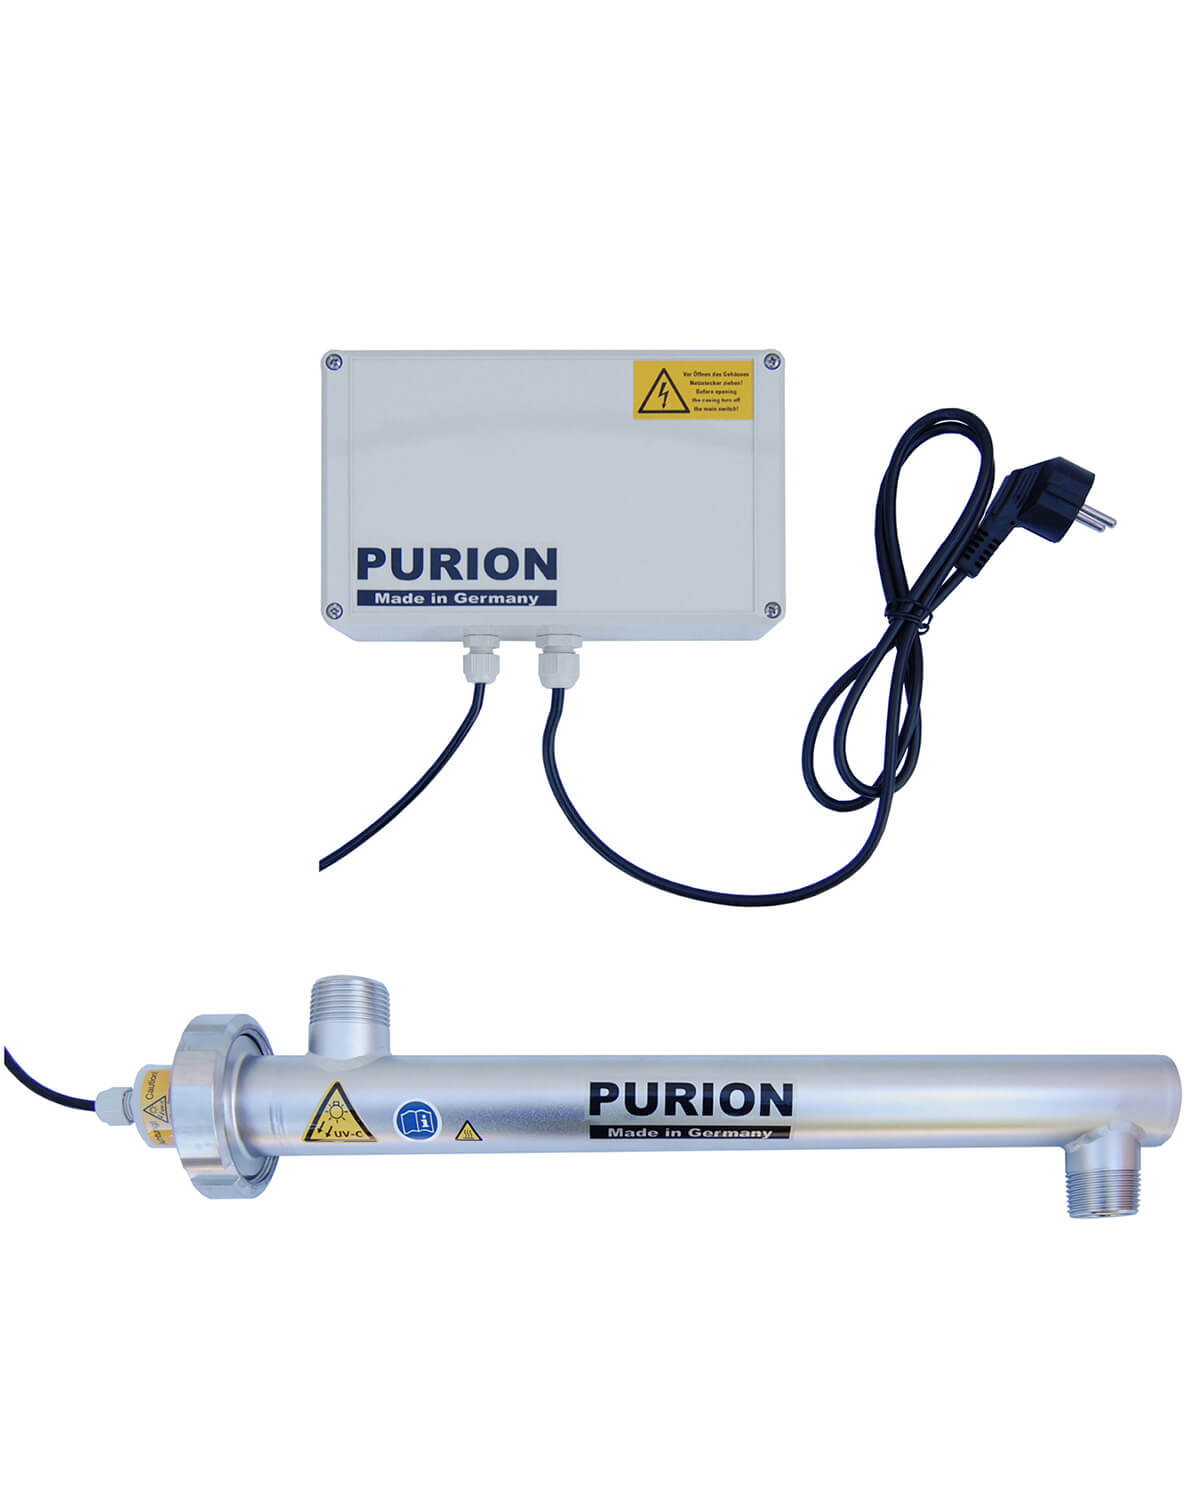 Der PURION 1000 PRO Basic der PURION GmbH nutzt zur Desinfektion die UV-C-Licht-Technologie und sorgt so für eine zuverlässige und effiziente Reinigung.